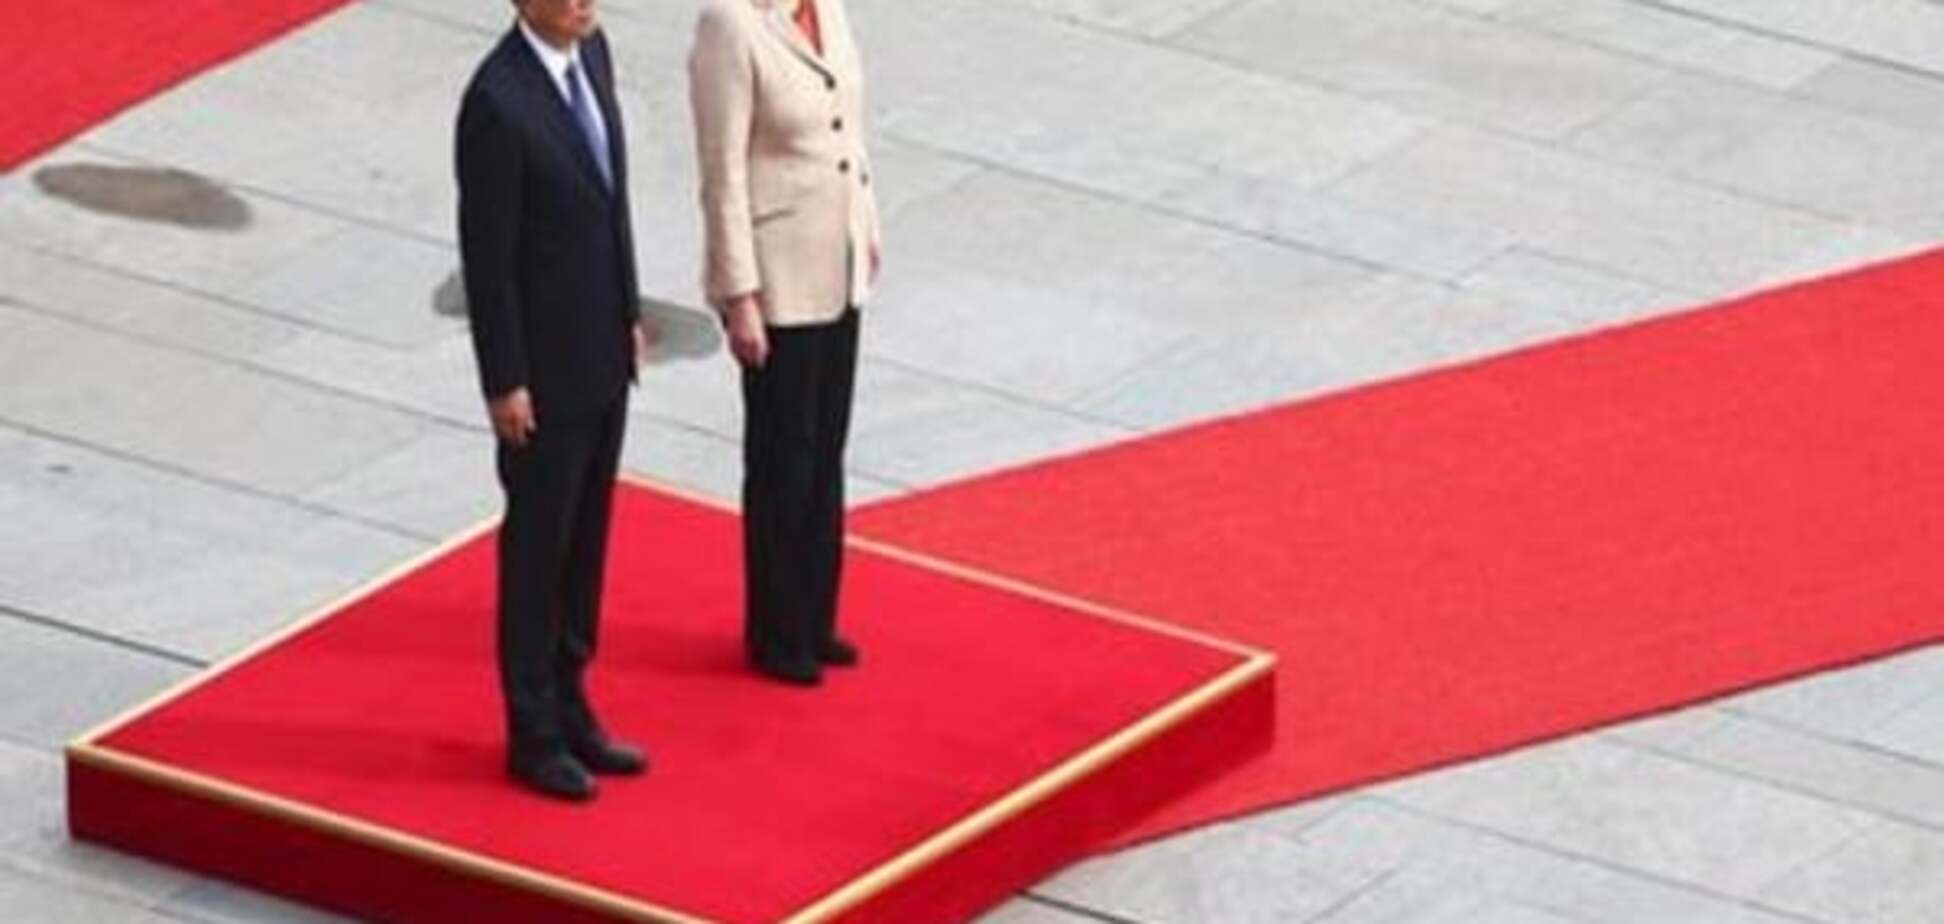 Комментарий: Меркель в КНР, а ее мысли далеко оттуда